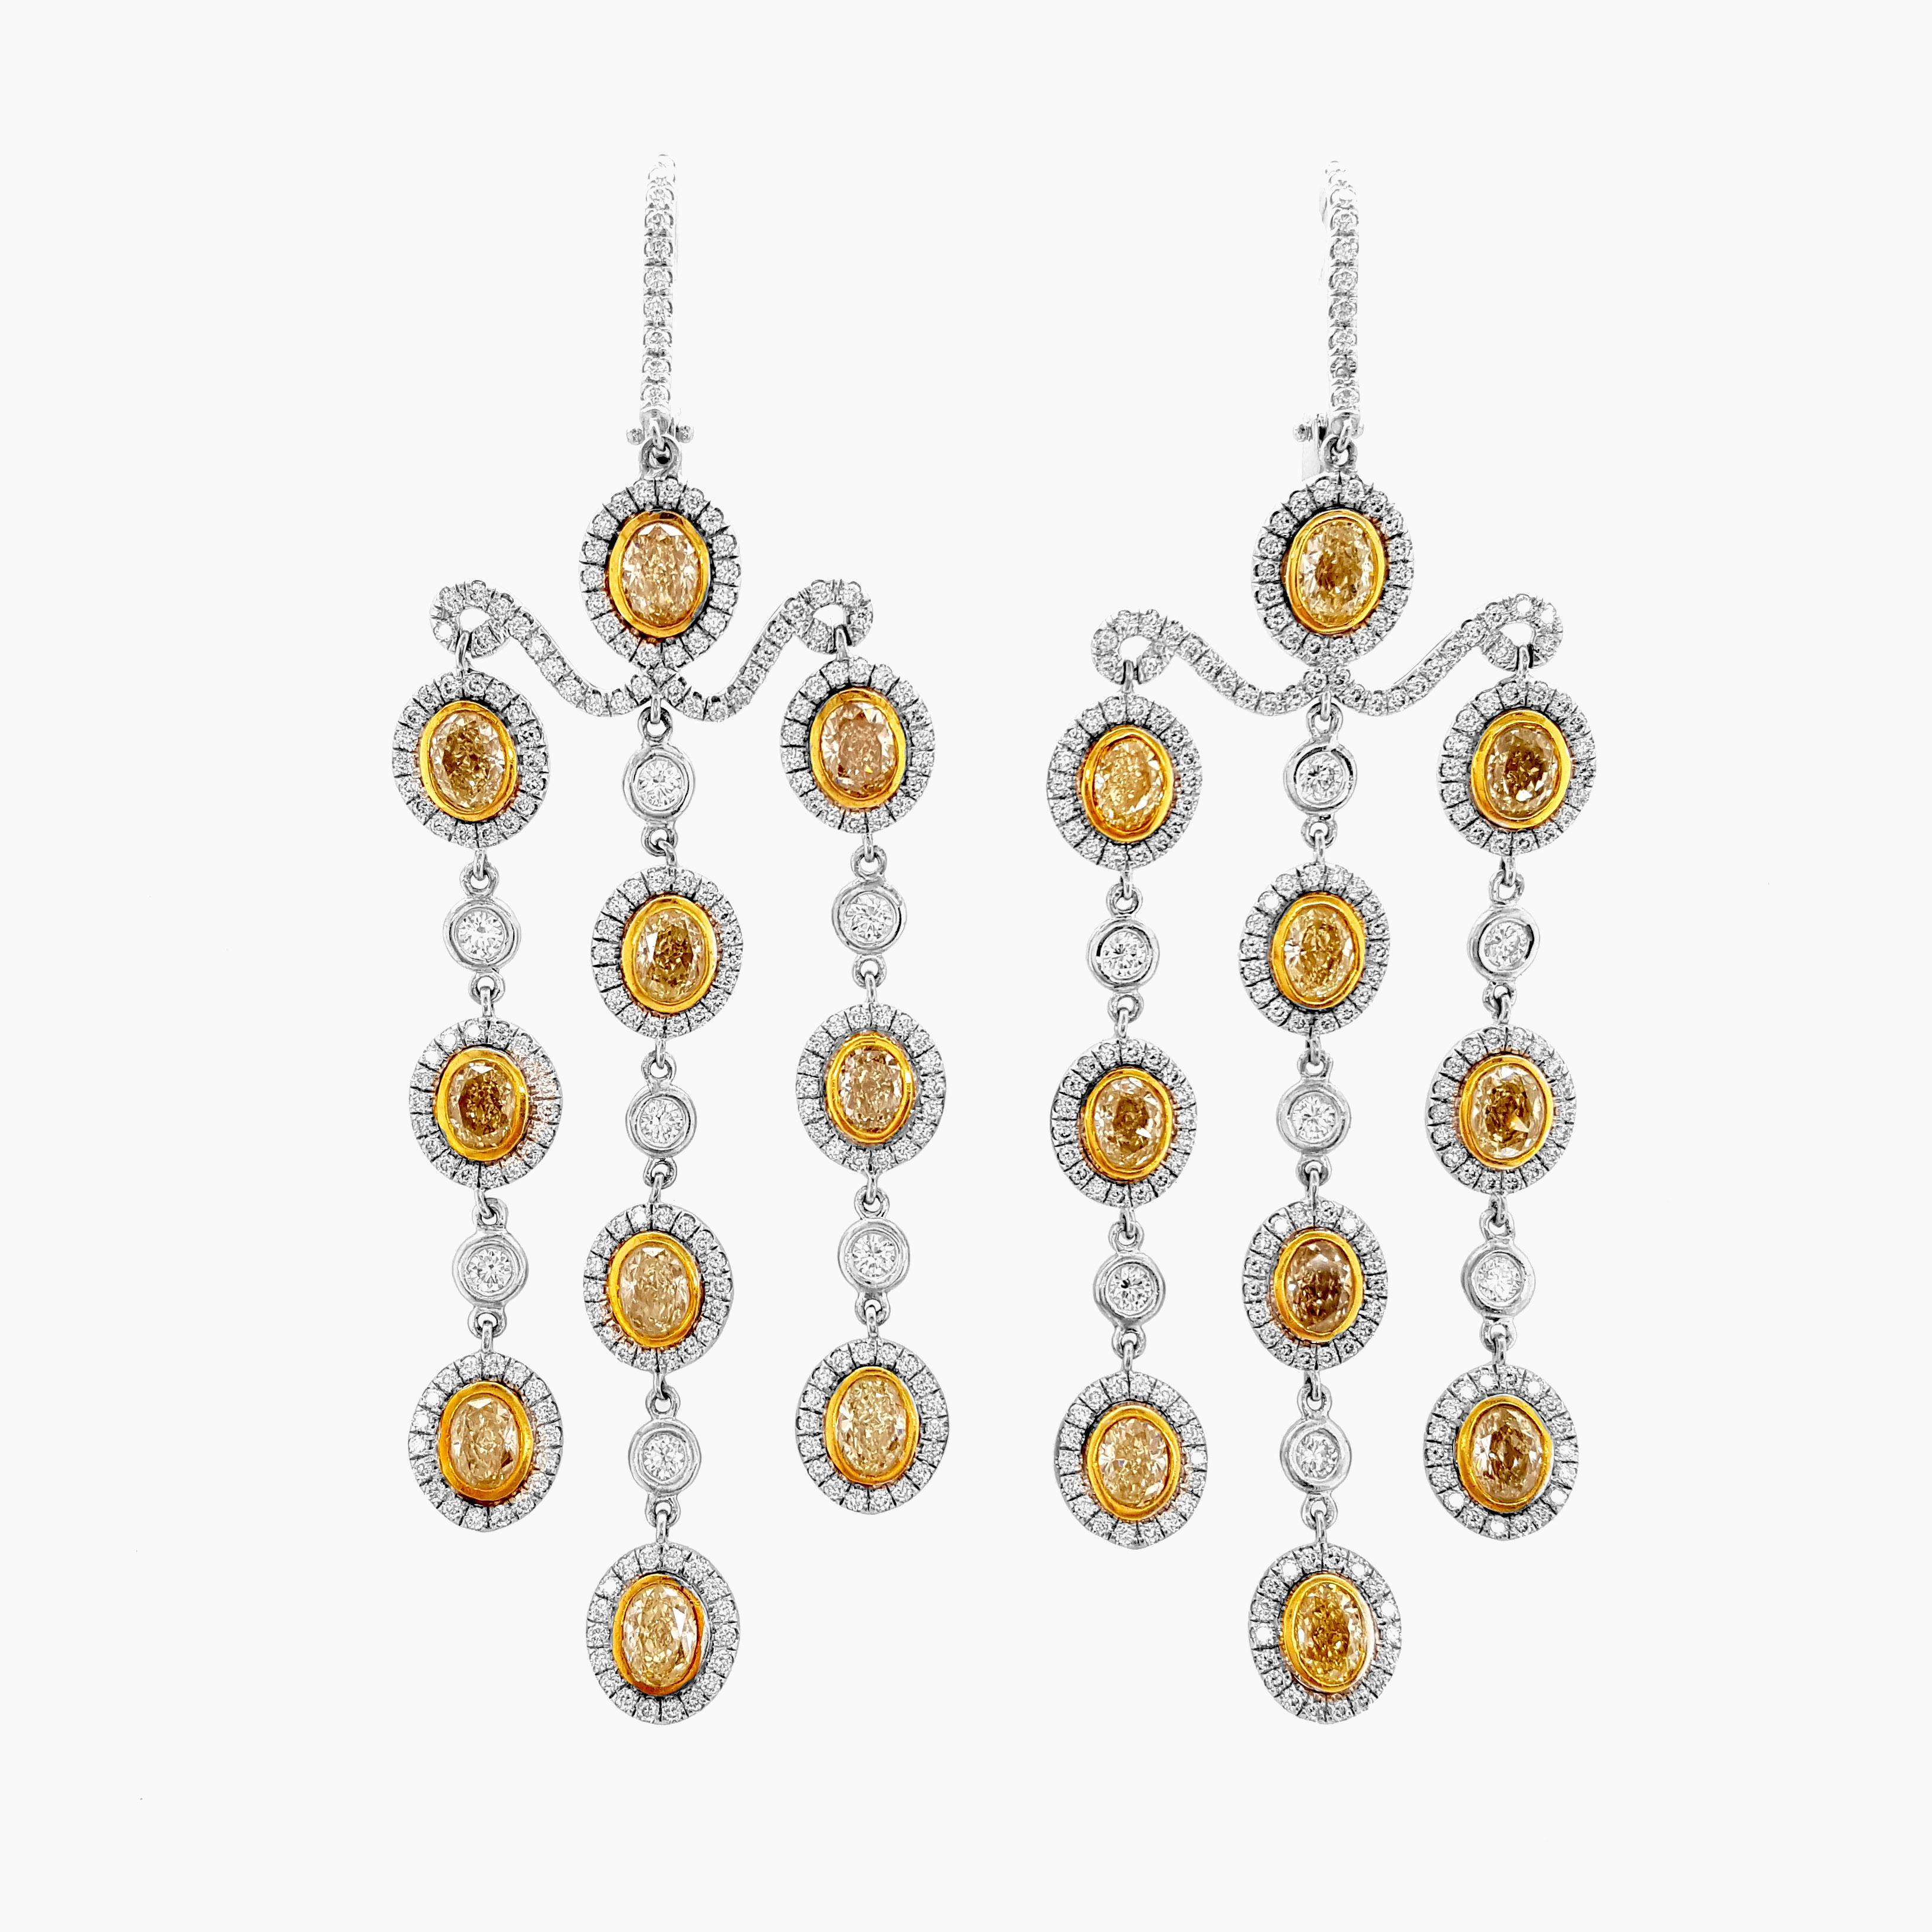 Nous vous présentons notre exquise paire de pendants d'oreilles Chandelier, ornés d'une combinaison captivante de diamants jaunes et blancs de 7,23 carats. Fabriquées à la main et serties dans de l'or jaune et blanc 18 carats poli, ces boucles